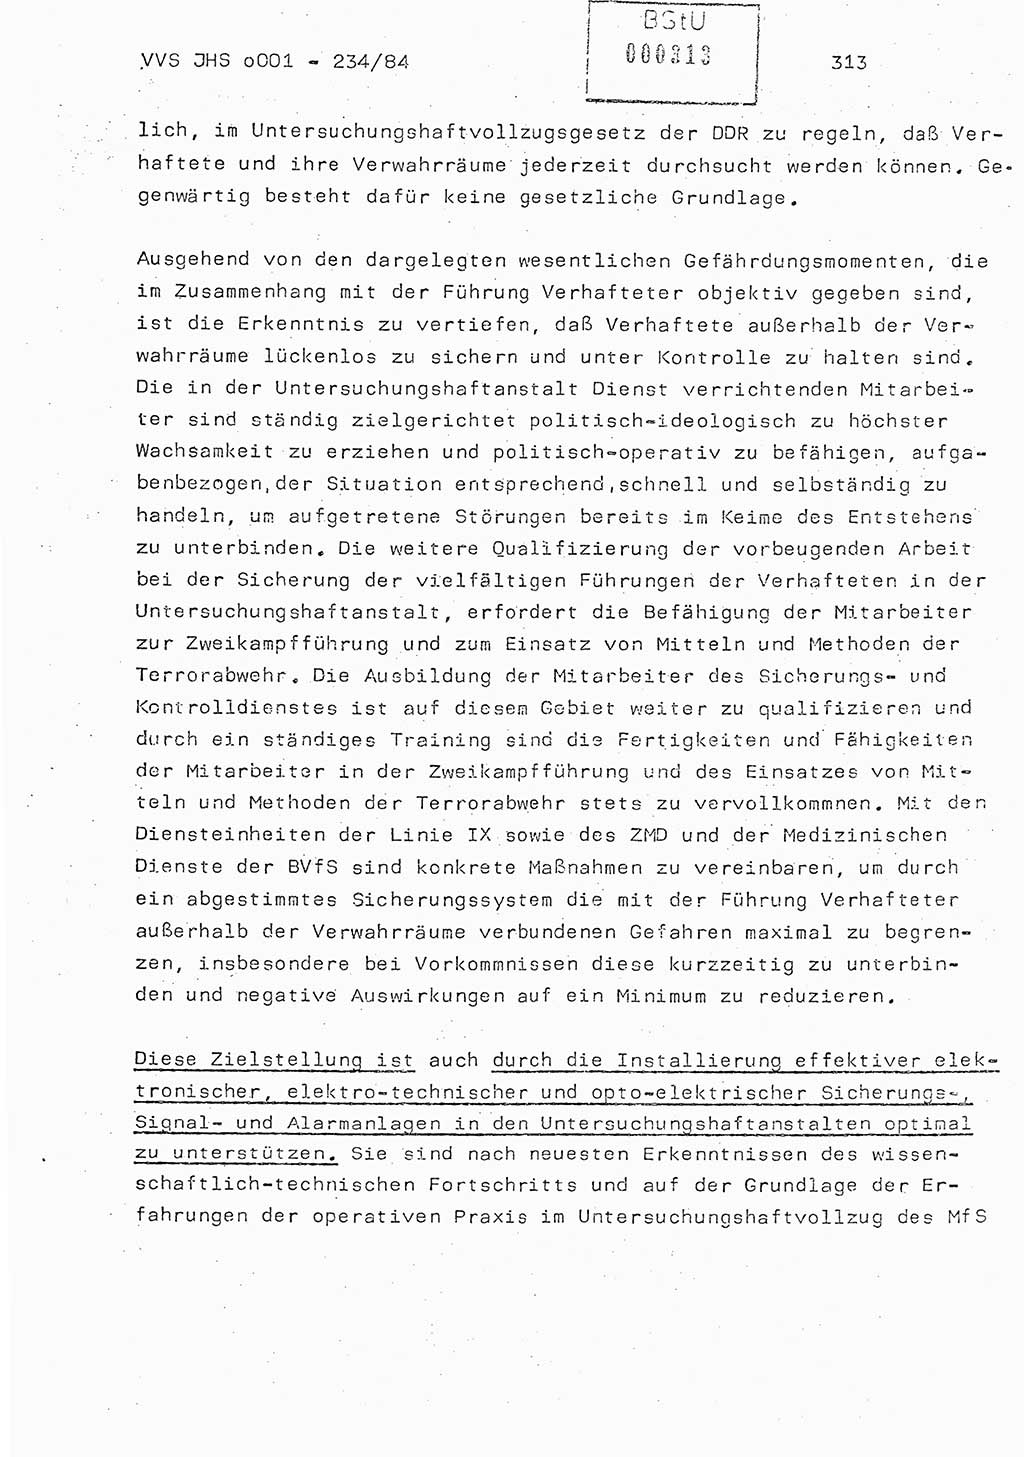 Dissertation Oberst Siegfried Rataizick (Abt. ⅩⅣ), Oberstleutnant Volkmar Heinz (Abt. ⅩⅣ), Oberstleutnant Werner Stein (HA Ⅸ), Hauptmann Heinz Conrad (JHS), Ministerium für Staatssicherheit (MfS) [Deutsche Demokratische Republik (DDR)], Juristische Hochschule (JHS), Vertrauliche Verschlußsache (VVS) o001-234/84, Potsdam 1984, Seite 313 (Diss. MfS DDR JHS VVS o001-234/84 1984, S. 313)